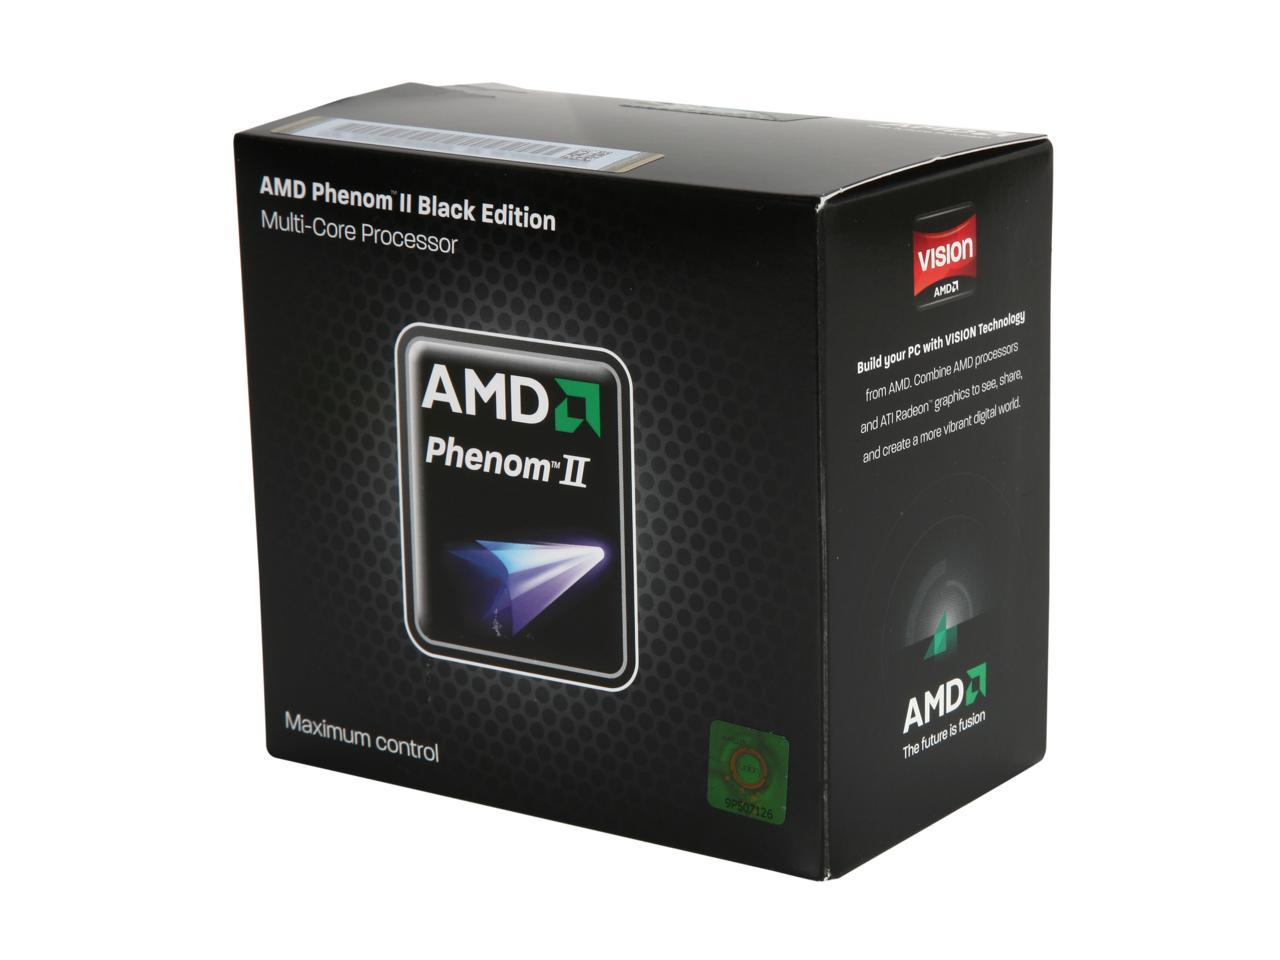 Amd Phenom Ii X4 955 Deneb 3 2ghz Quad Core Processor Newegg Com Newegg Com